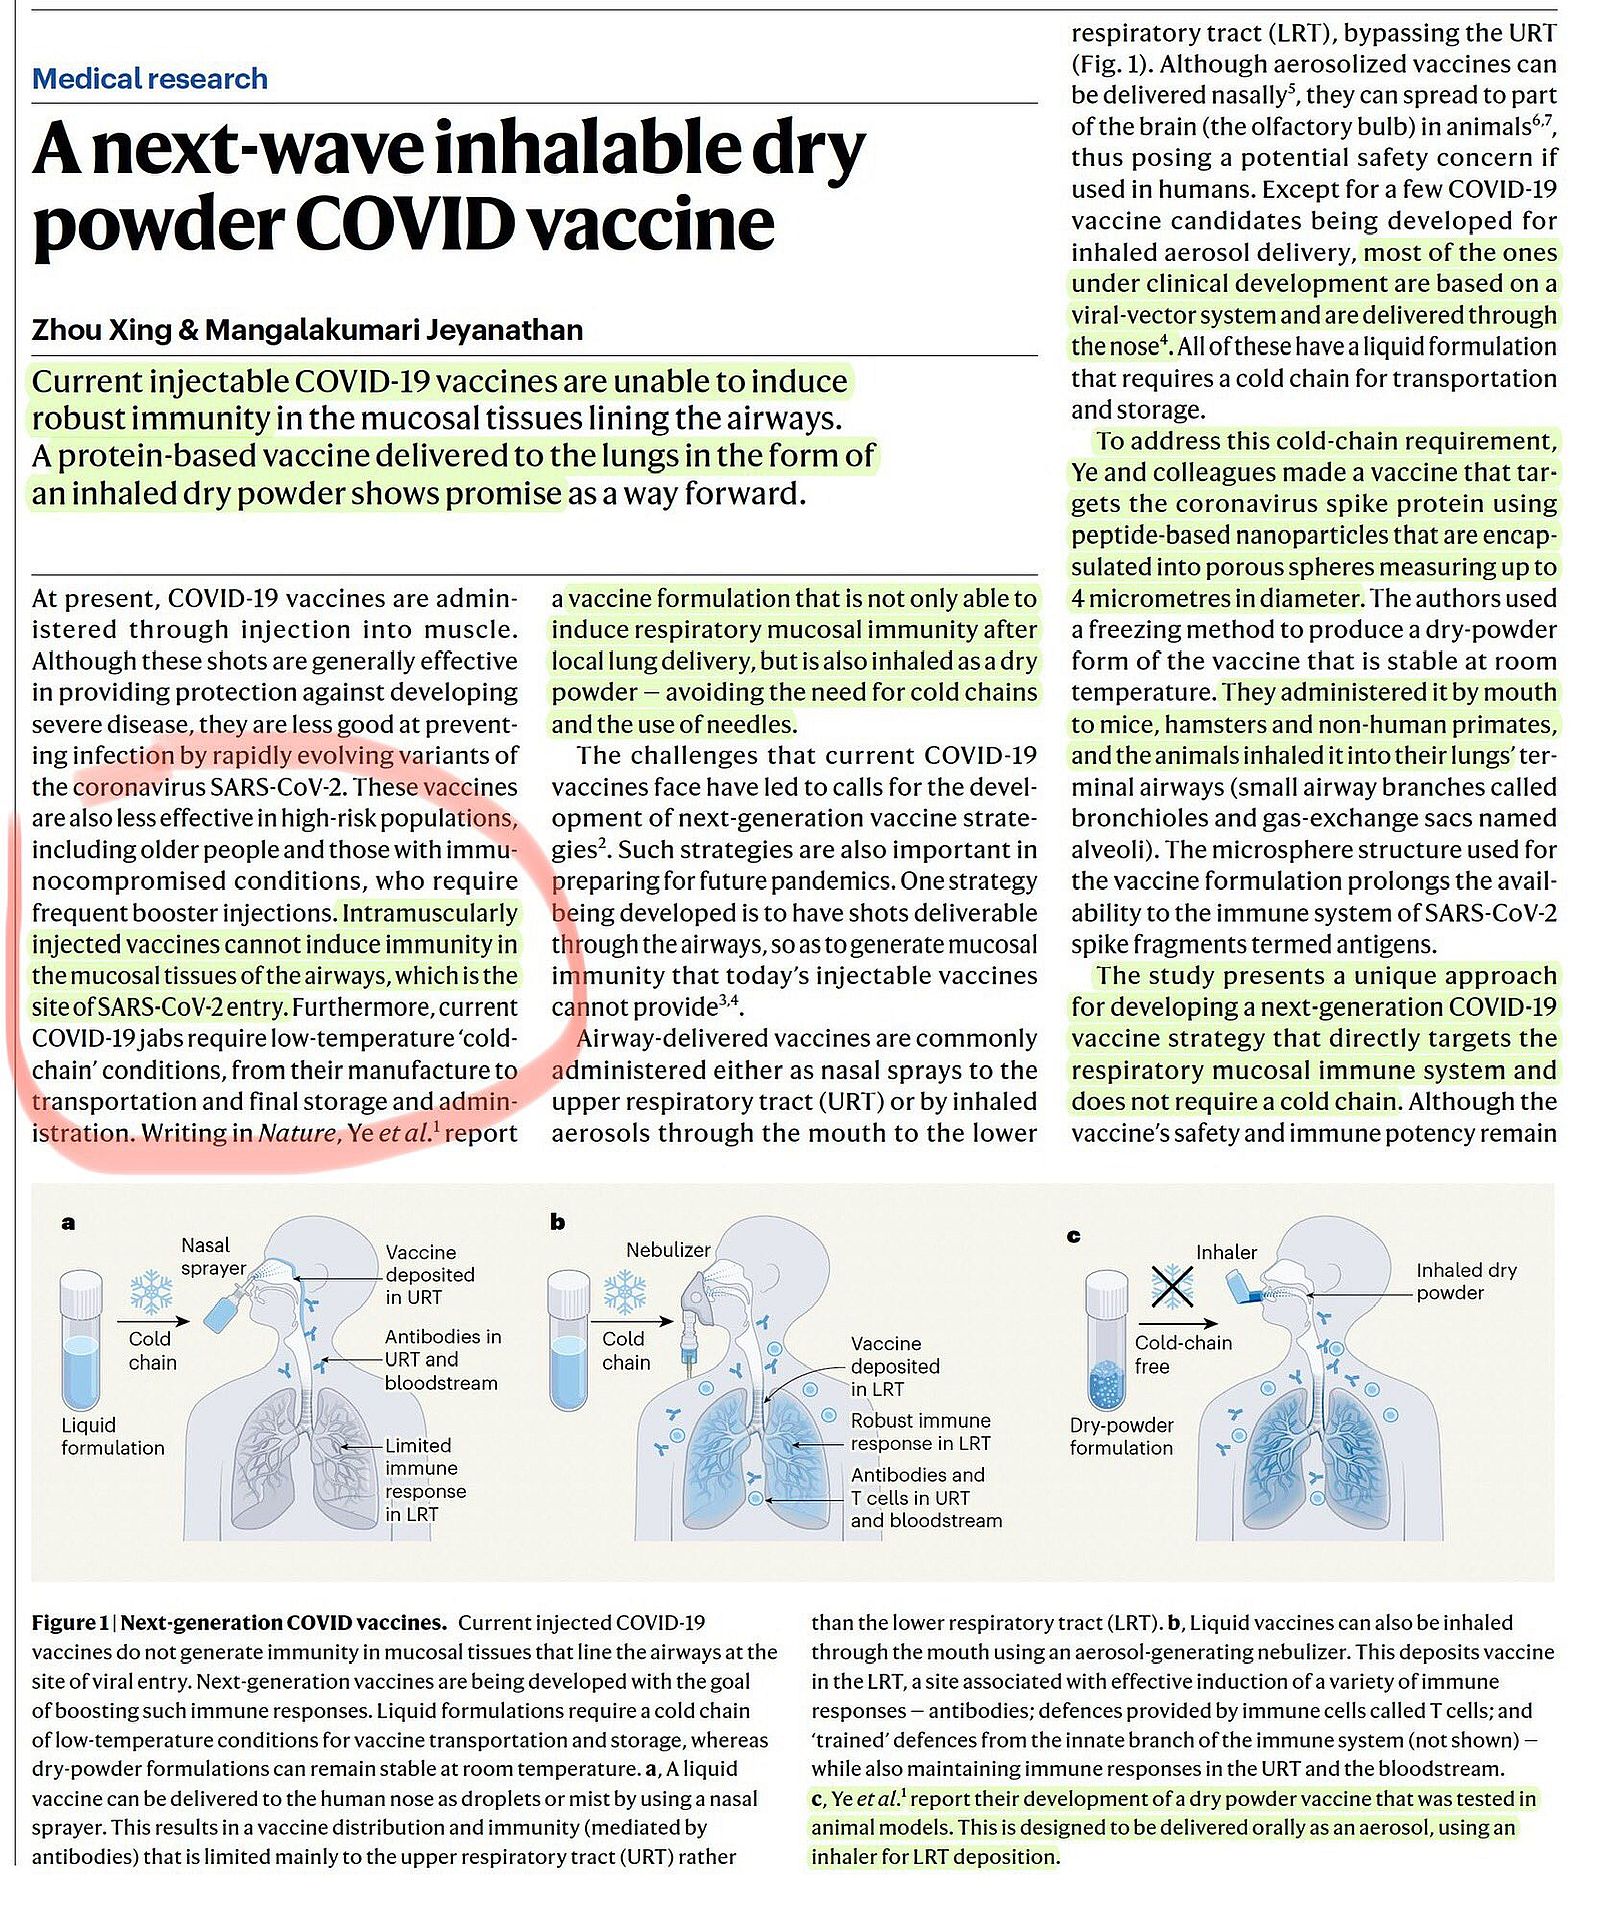 Nuovi vaccini per inalazione in polvere secca nano-micro composita “sicuri ed efficaci”.